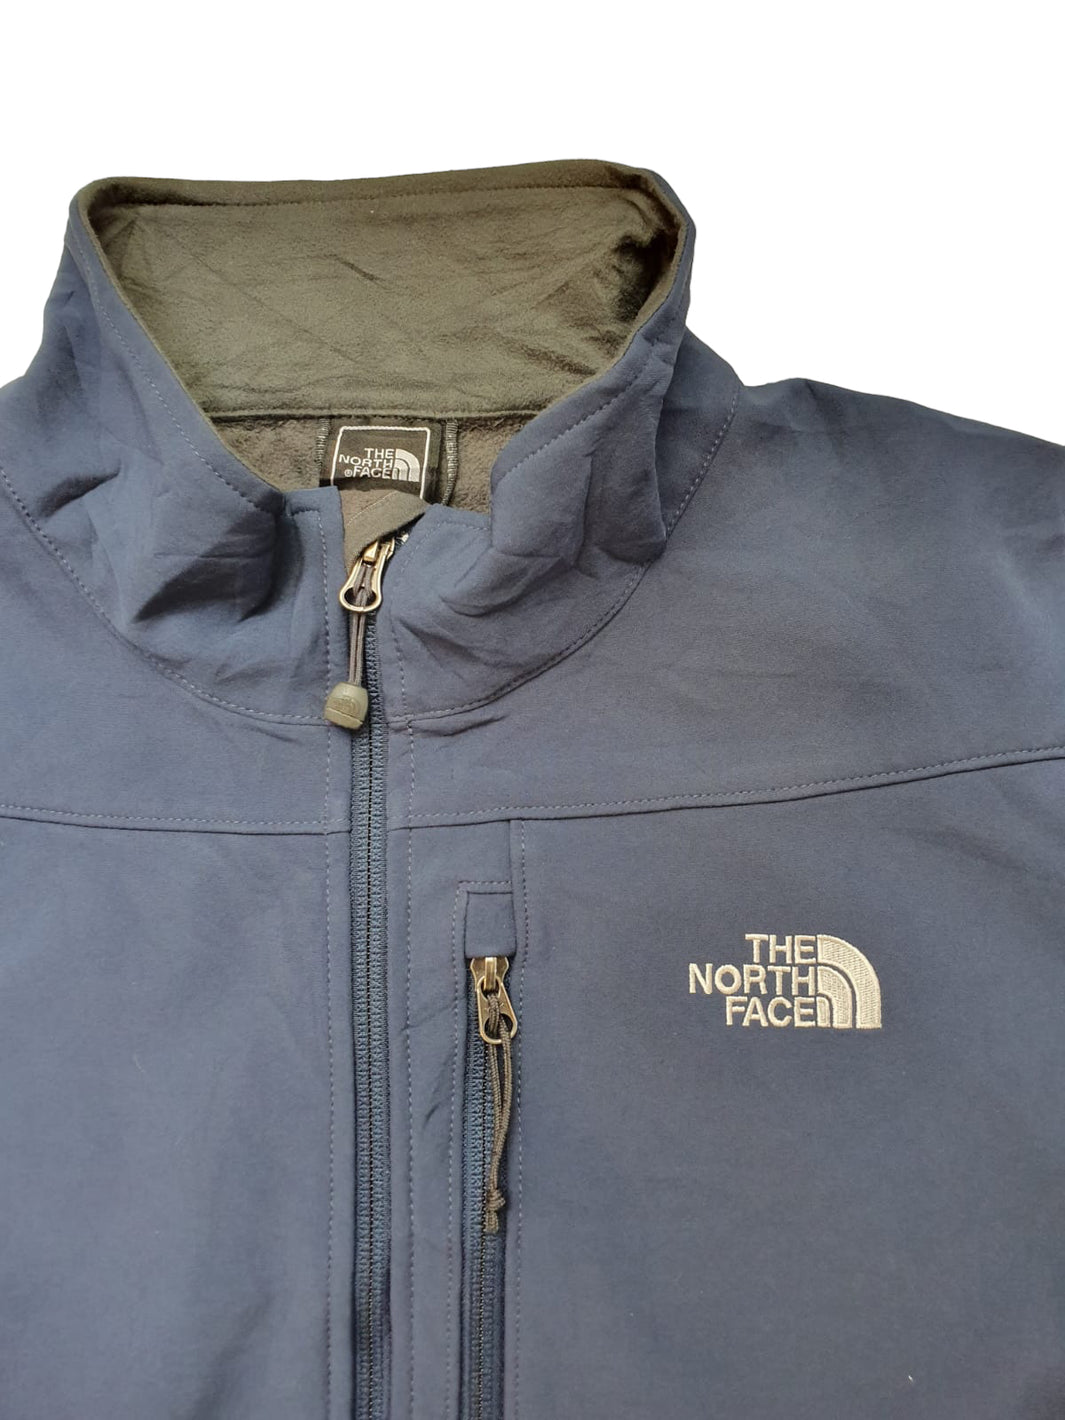 North Face light Jacket